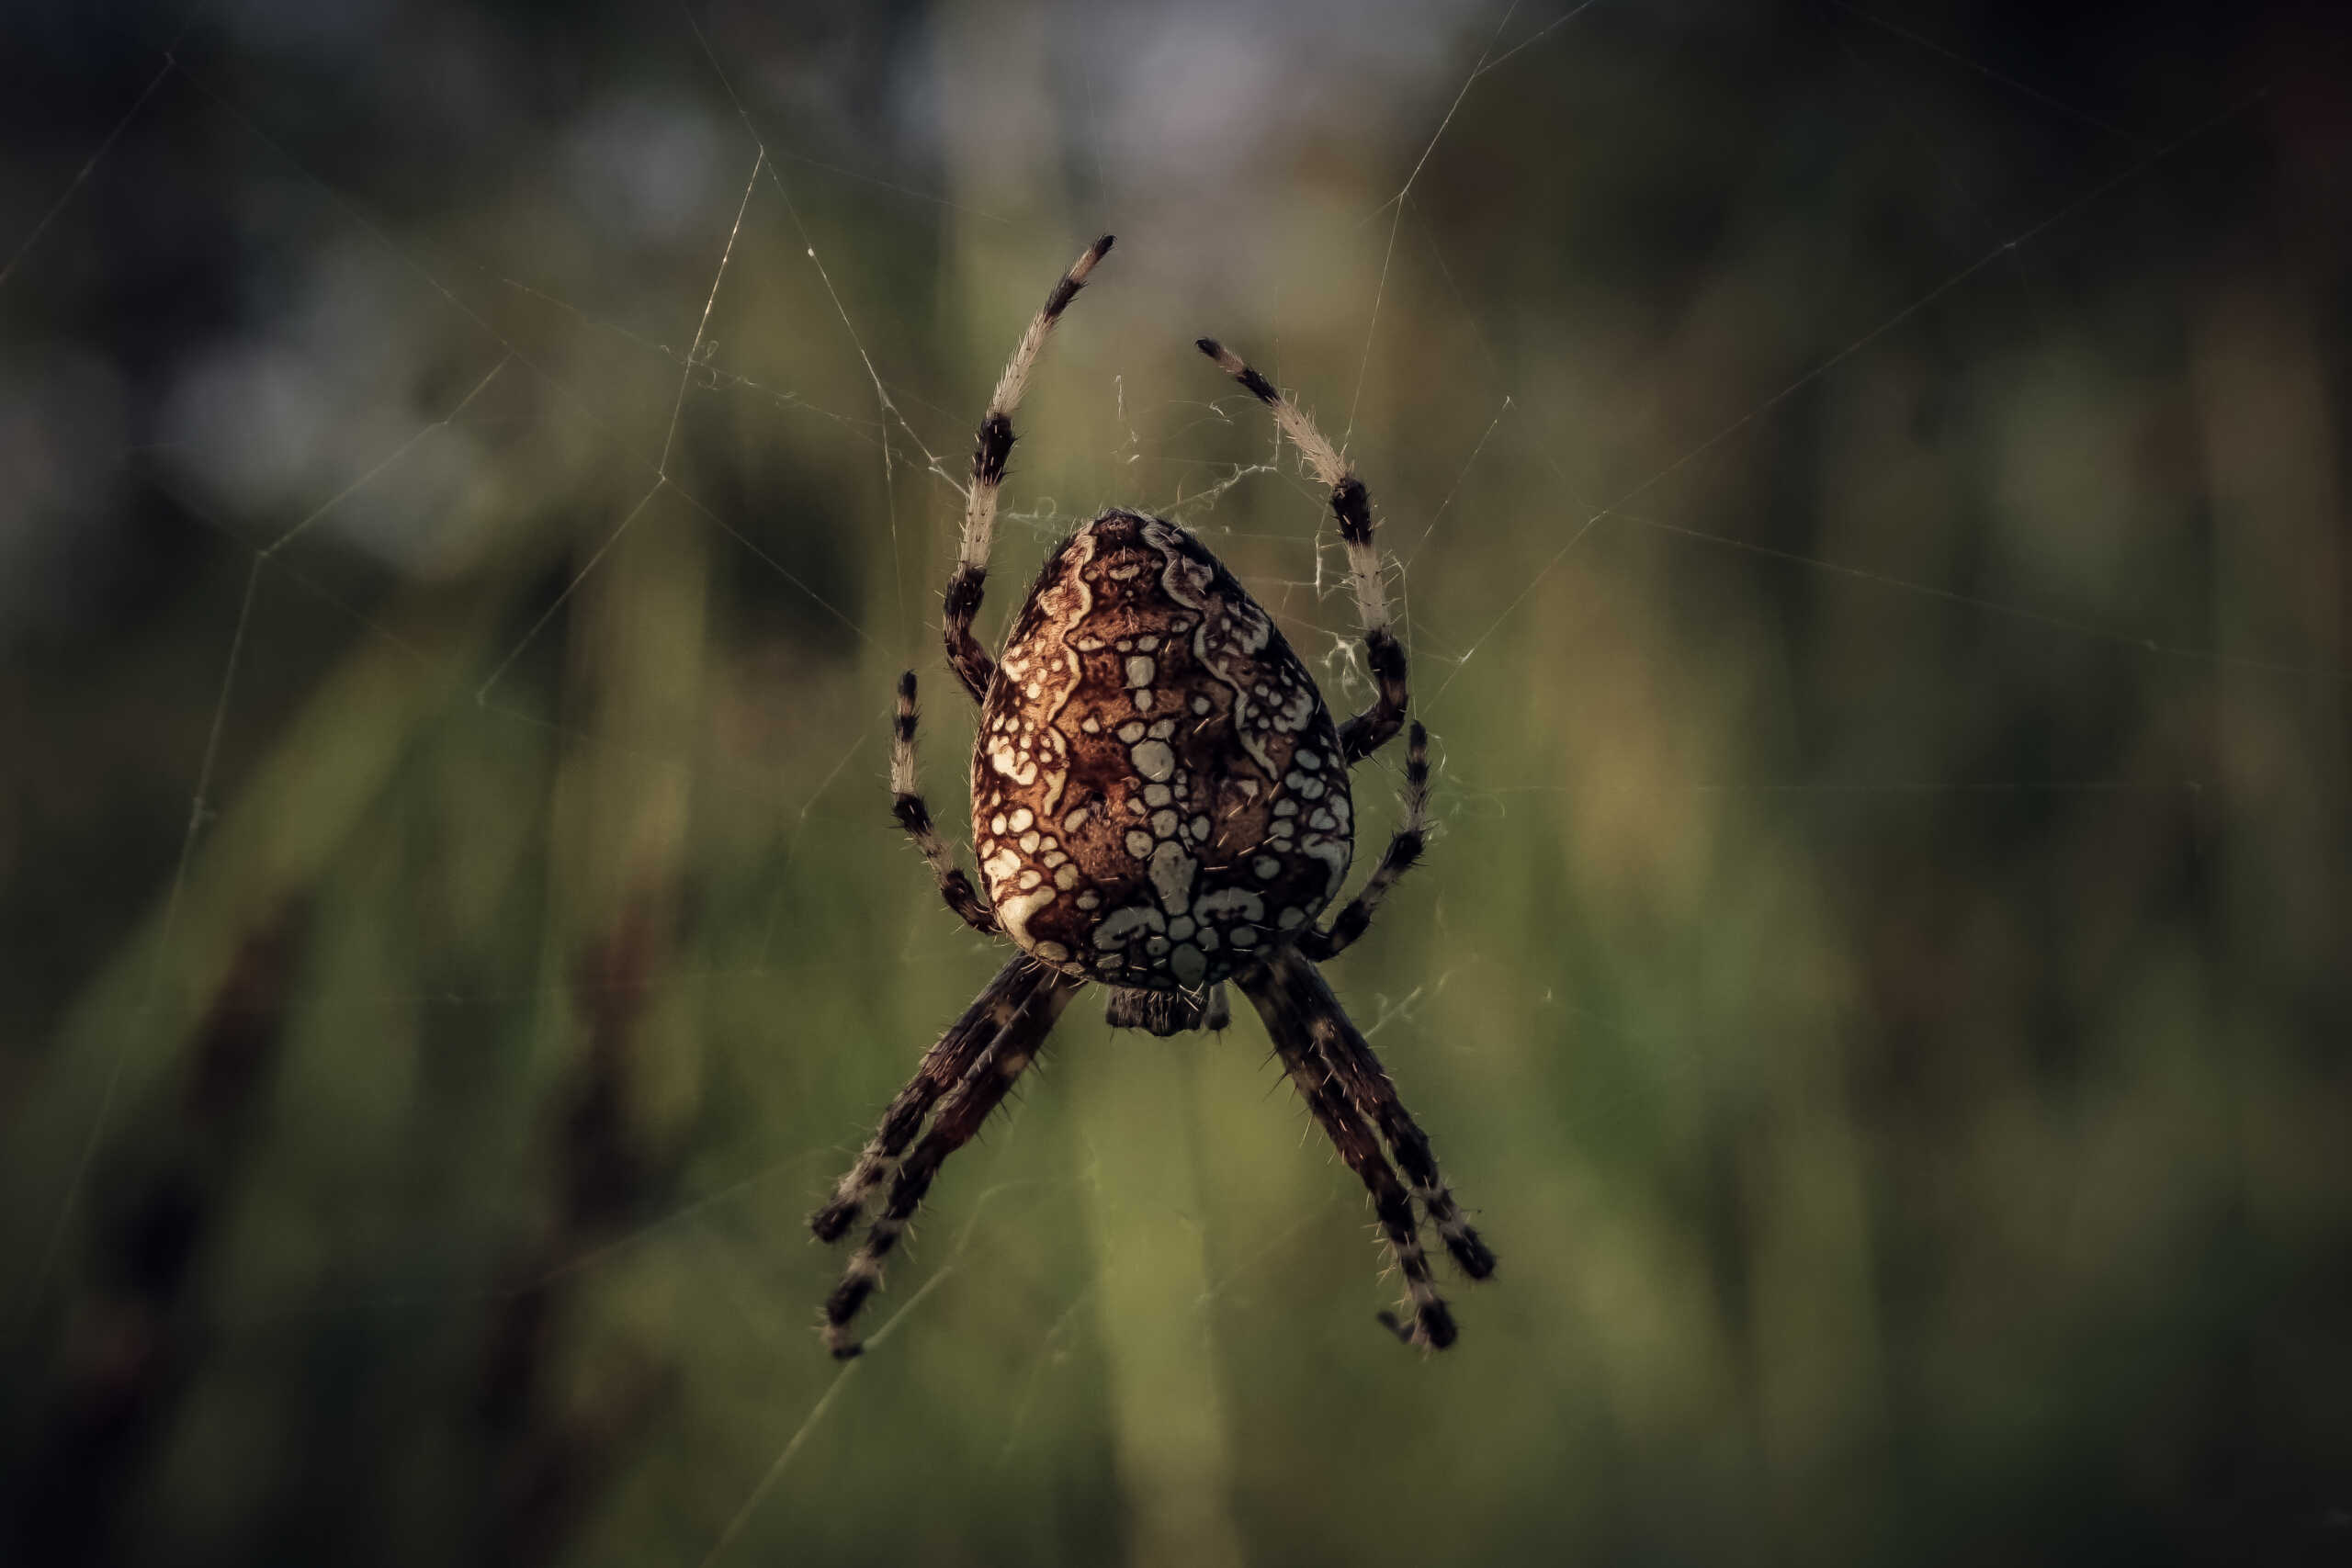 Αυστραλία: Βρέθηκε η μεγαλύτερη αρσενική αράχνη στον κόσμο και είναι 7,9 εκατοστά